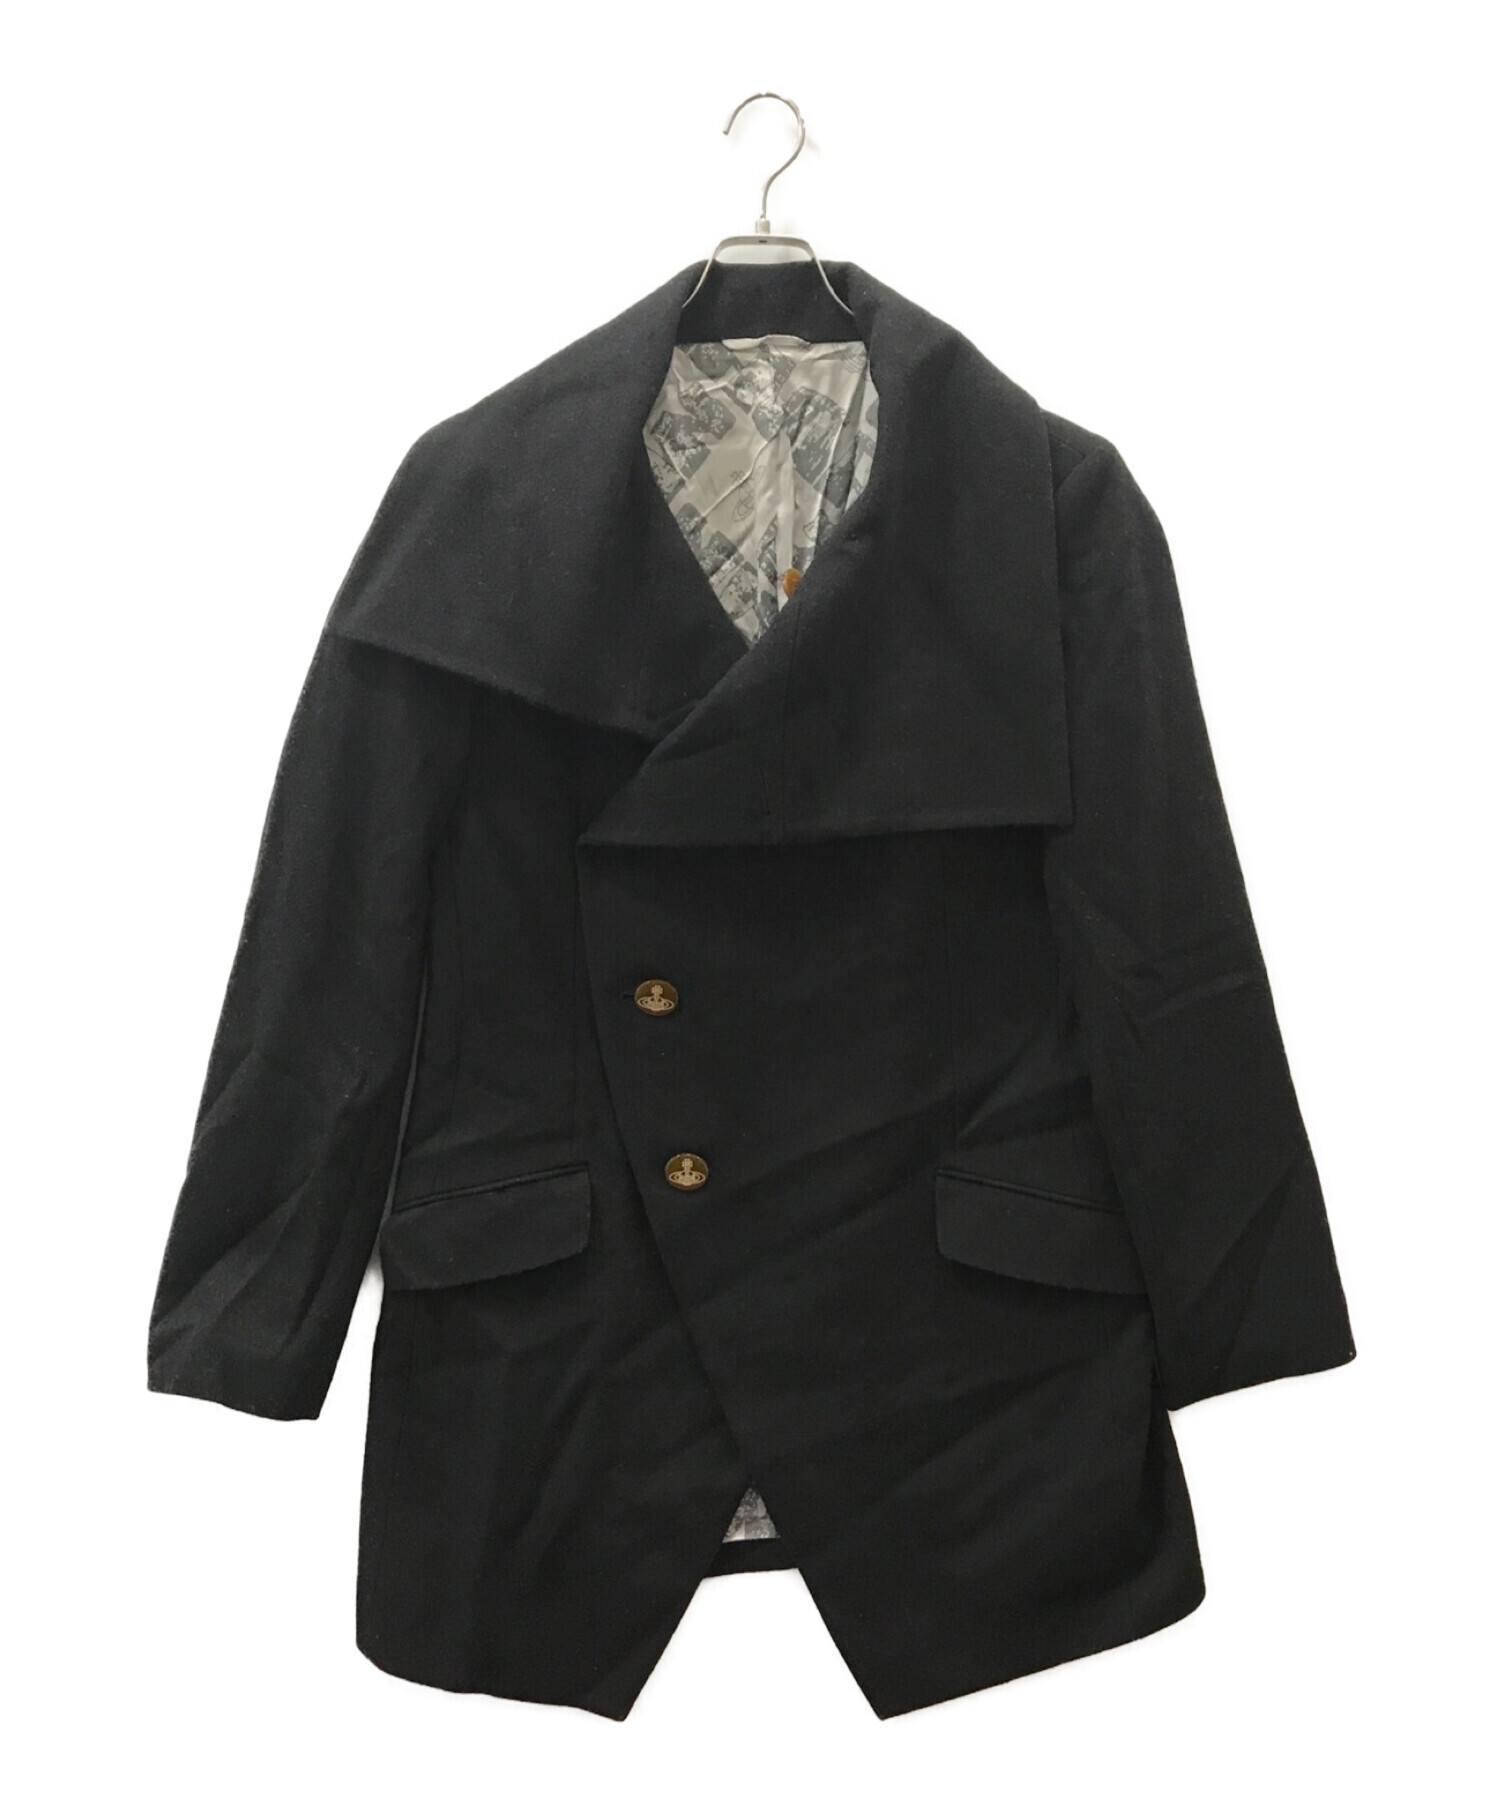 美品 ヴィヴィアンウエストウッドマン Vivienne Westwood MAN コート ロングコート ウール 無地 アウター メンズ 44(S相当) ネイビー